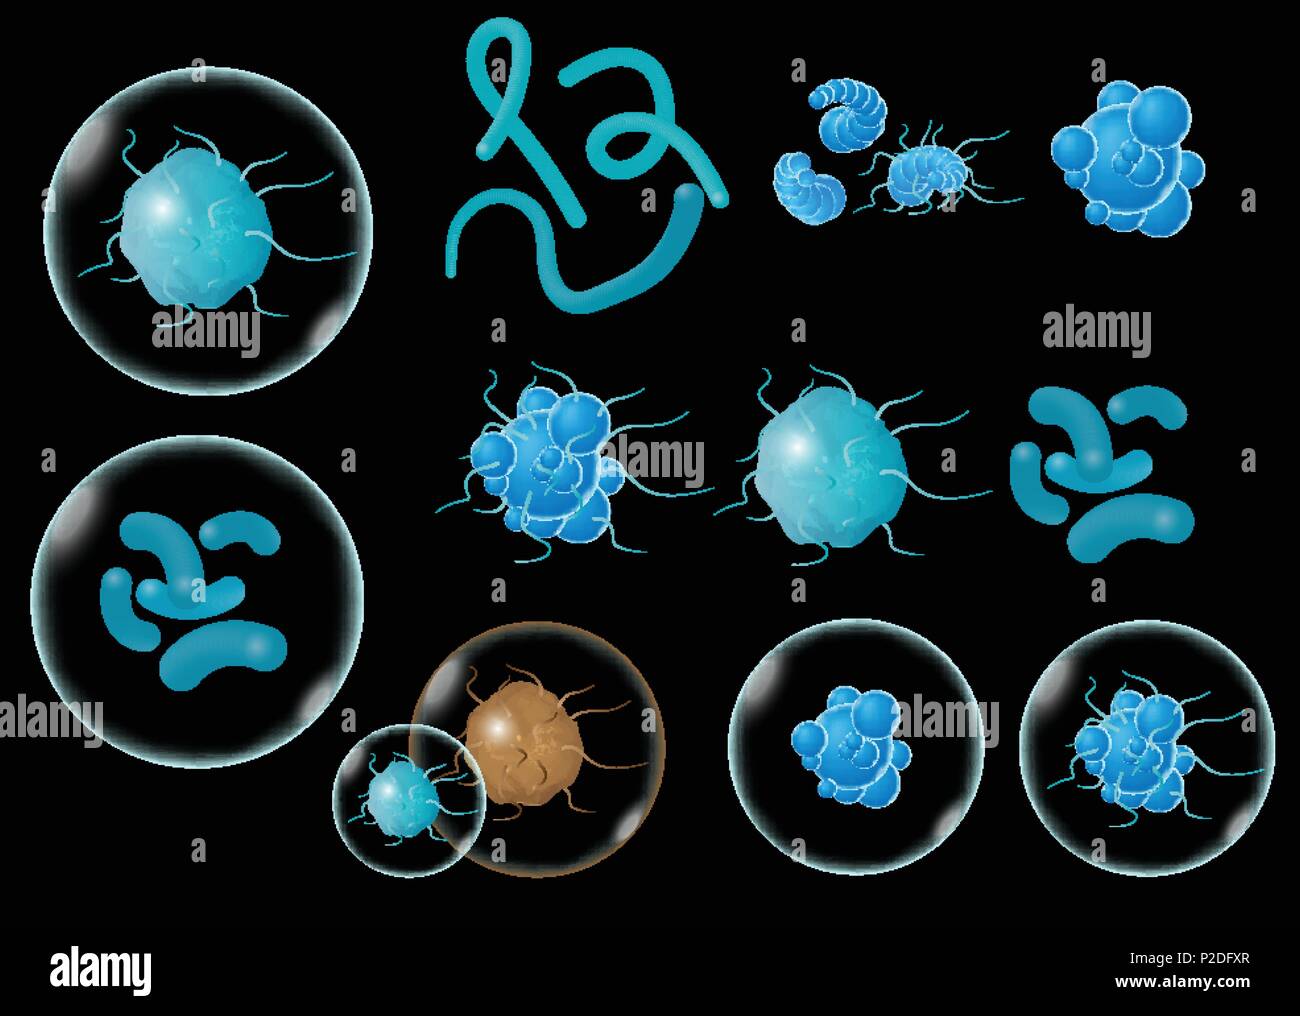 Bakterien Und Keime Und Mikroorganismen Krankheit Verursachenden Objekte Verschiedene Arten Bakterien Viren Vector Illustration Auf Schwarzem Hintergrund Stock Vektorgrafik Alamy